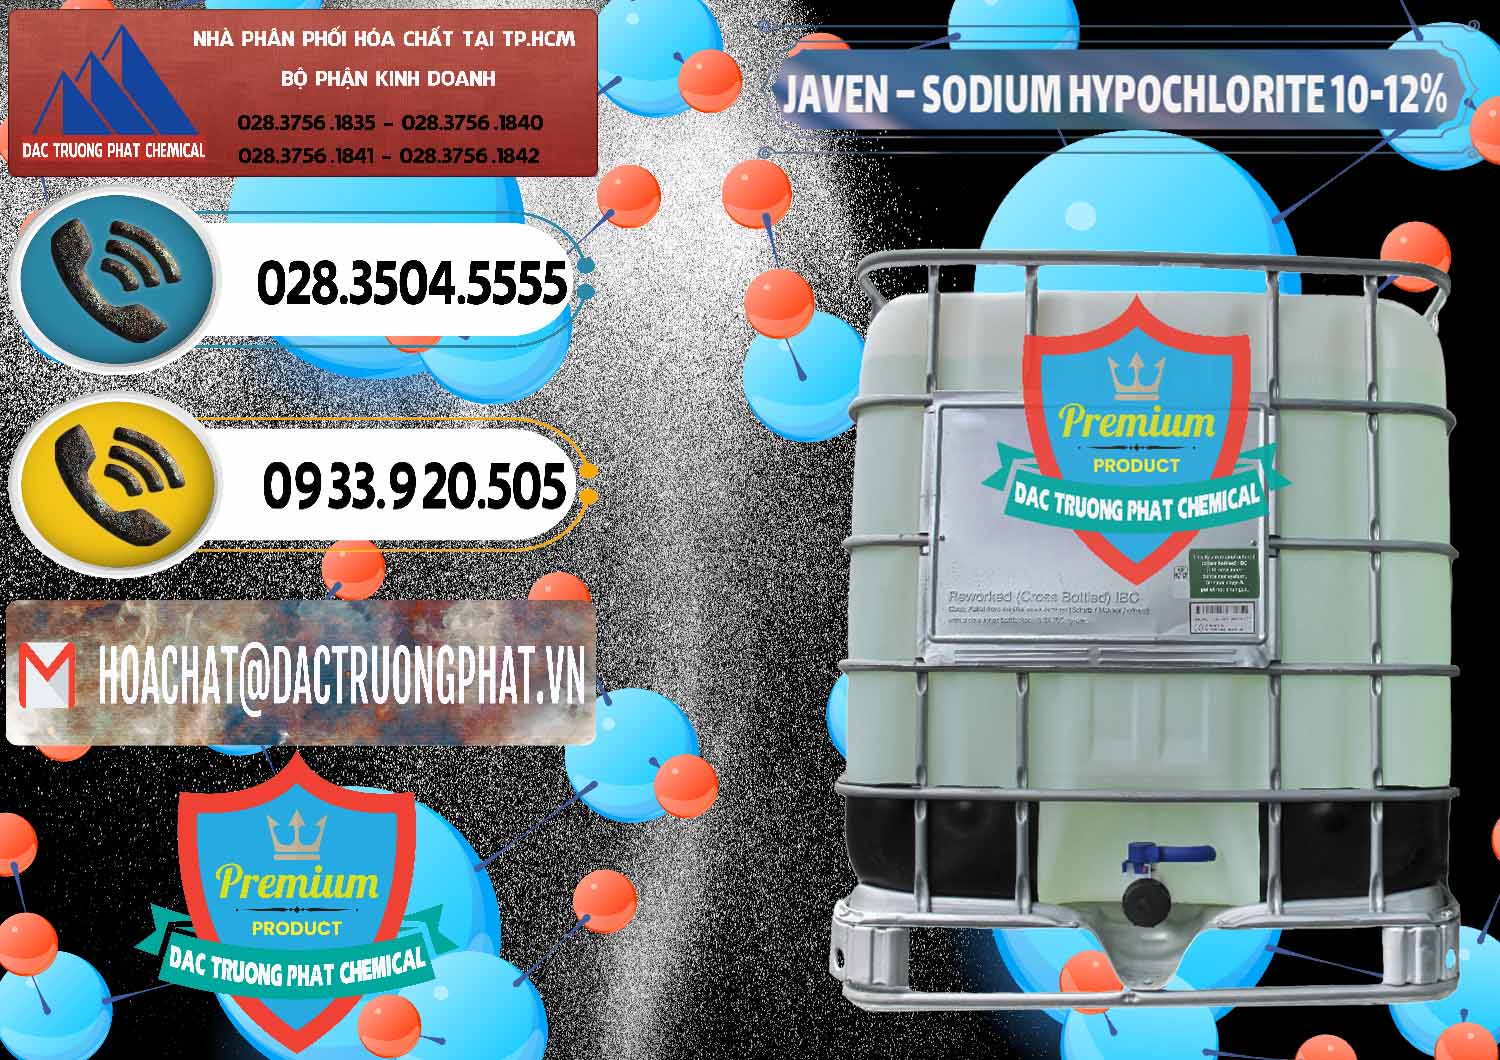 Đơn vị chuyên kinh doanh _ bán Javen - Sodium Hypochlorite 10-12% Việt Nam - 0188 - Nhà phân phối - bán hóa chất tại TP.HCM - hoachatdetnhuom.vn